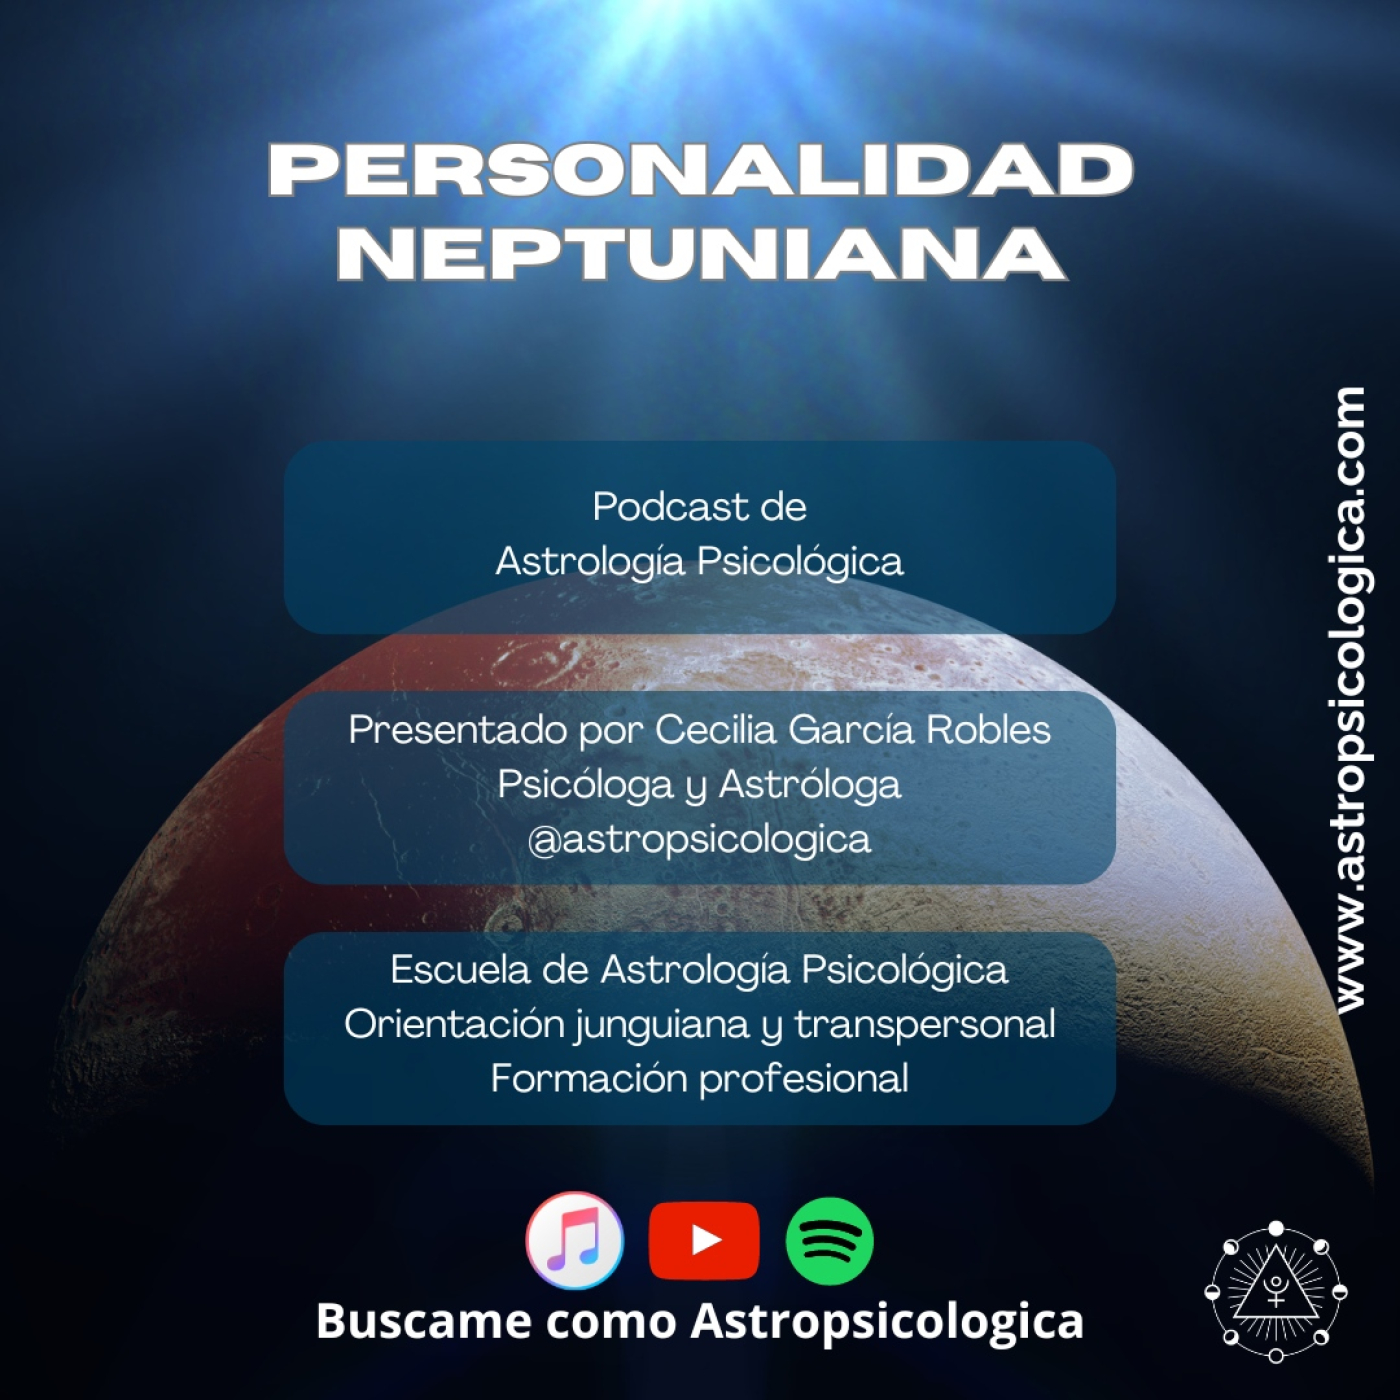 Podcast: Personalidad neptuniana